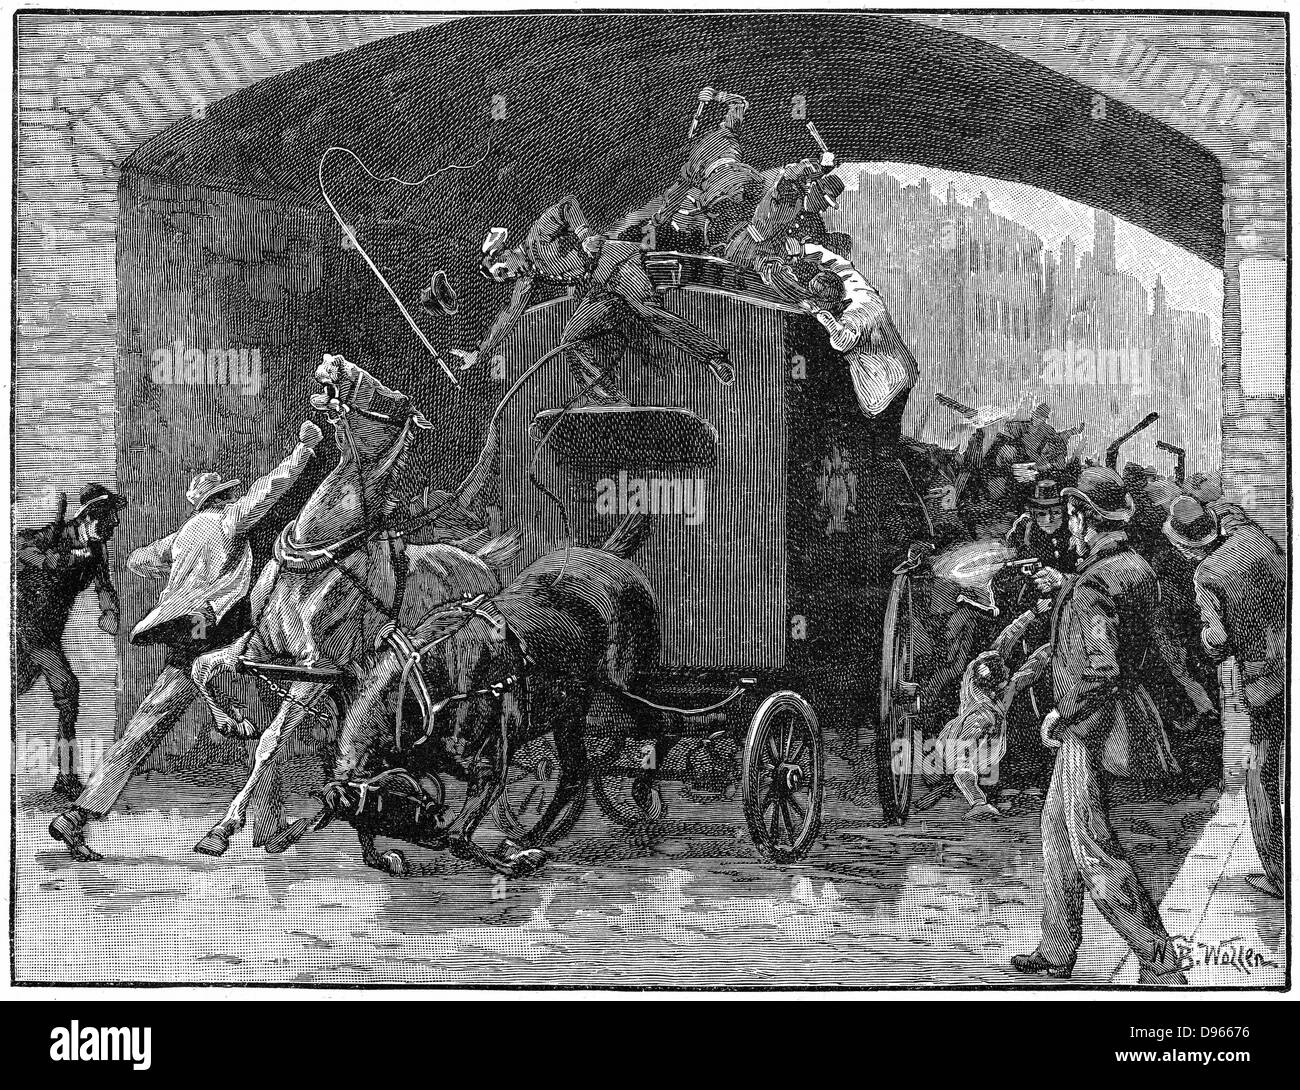 Les chefs de la Conspiration des Fenians et Kelly Deasy sauvé de fourgon de police passant sous le pont de chemin de fer dans la région de Hyde Street sur la façon d'un tribunal à Manchester en prison, le 18 septembre 1867. Le sergent de police abattu. La gravure sur bois Banque D'Images